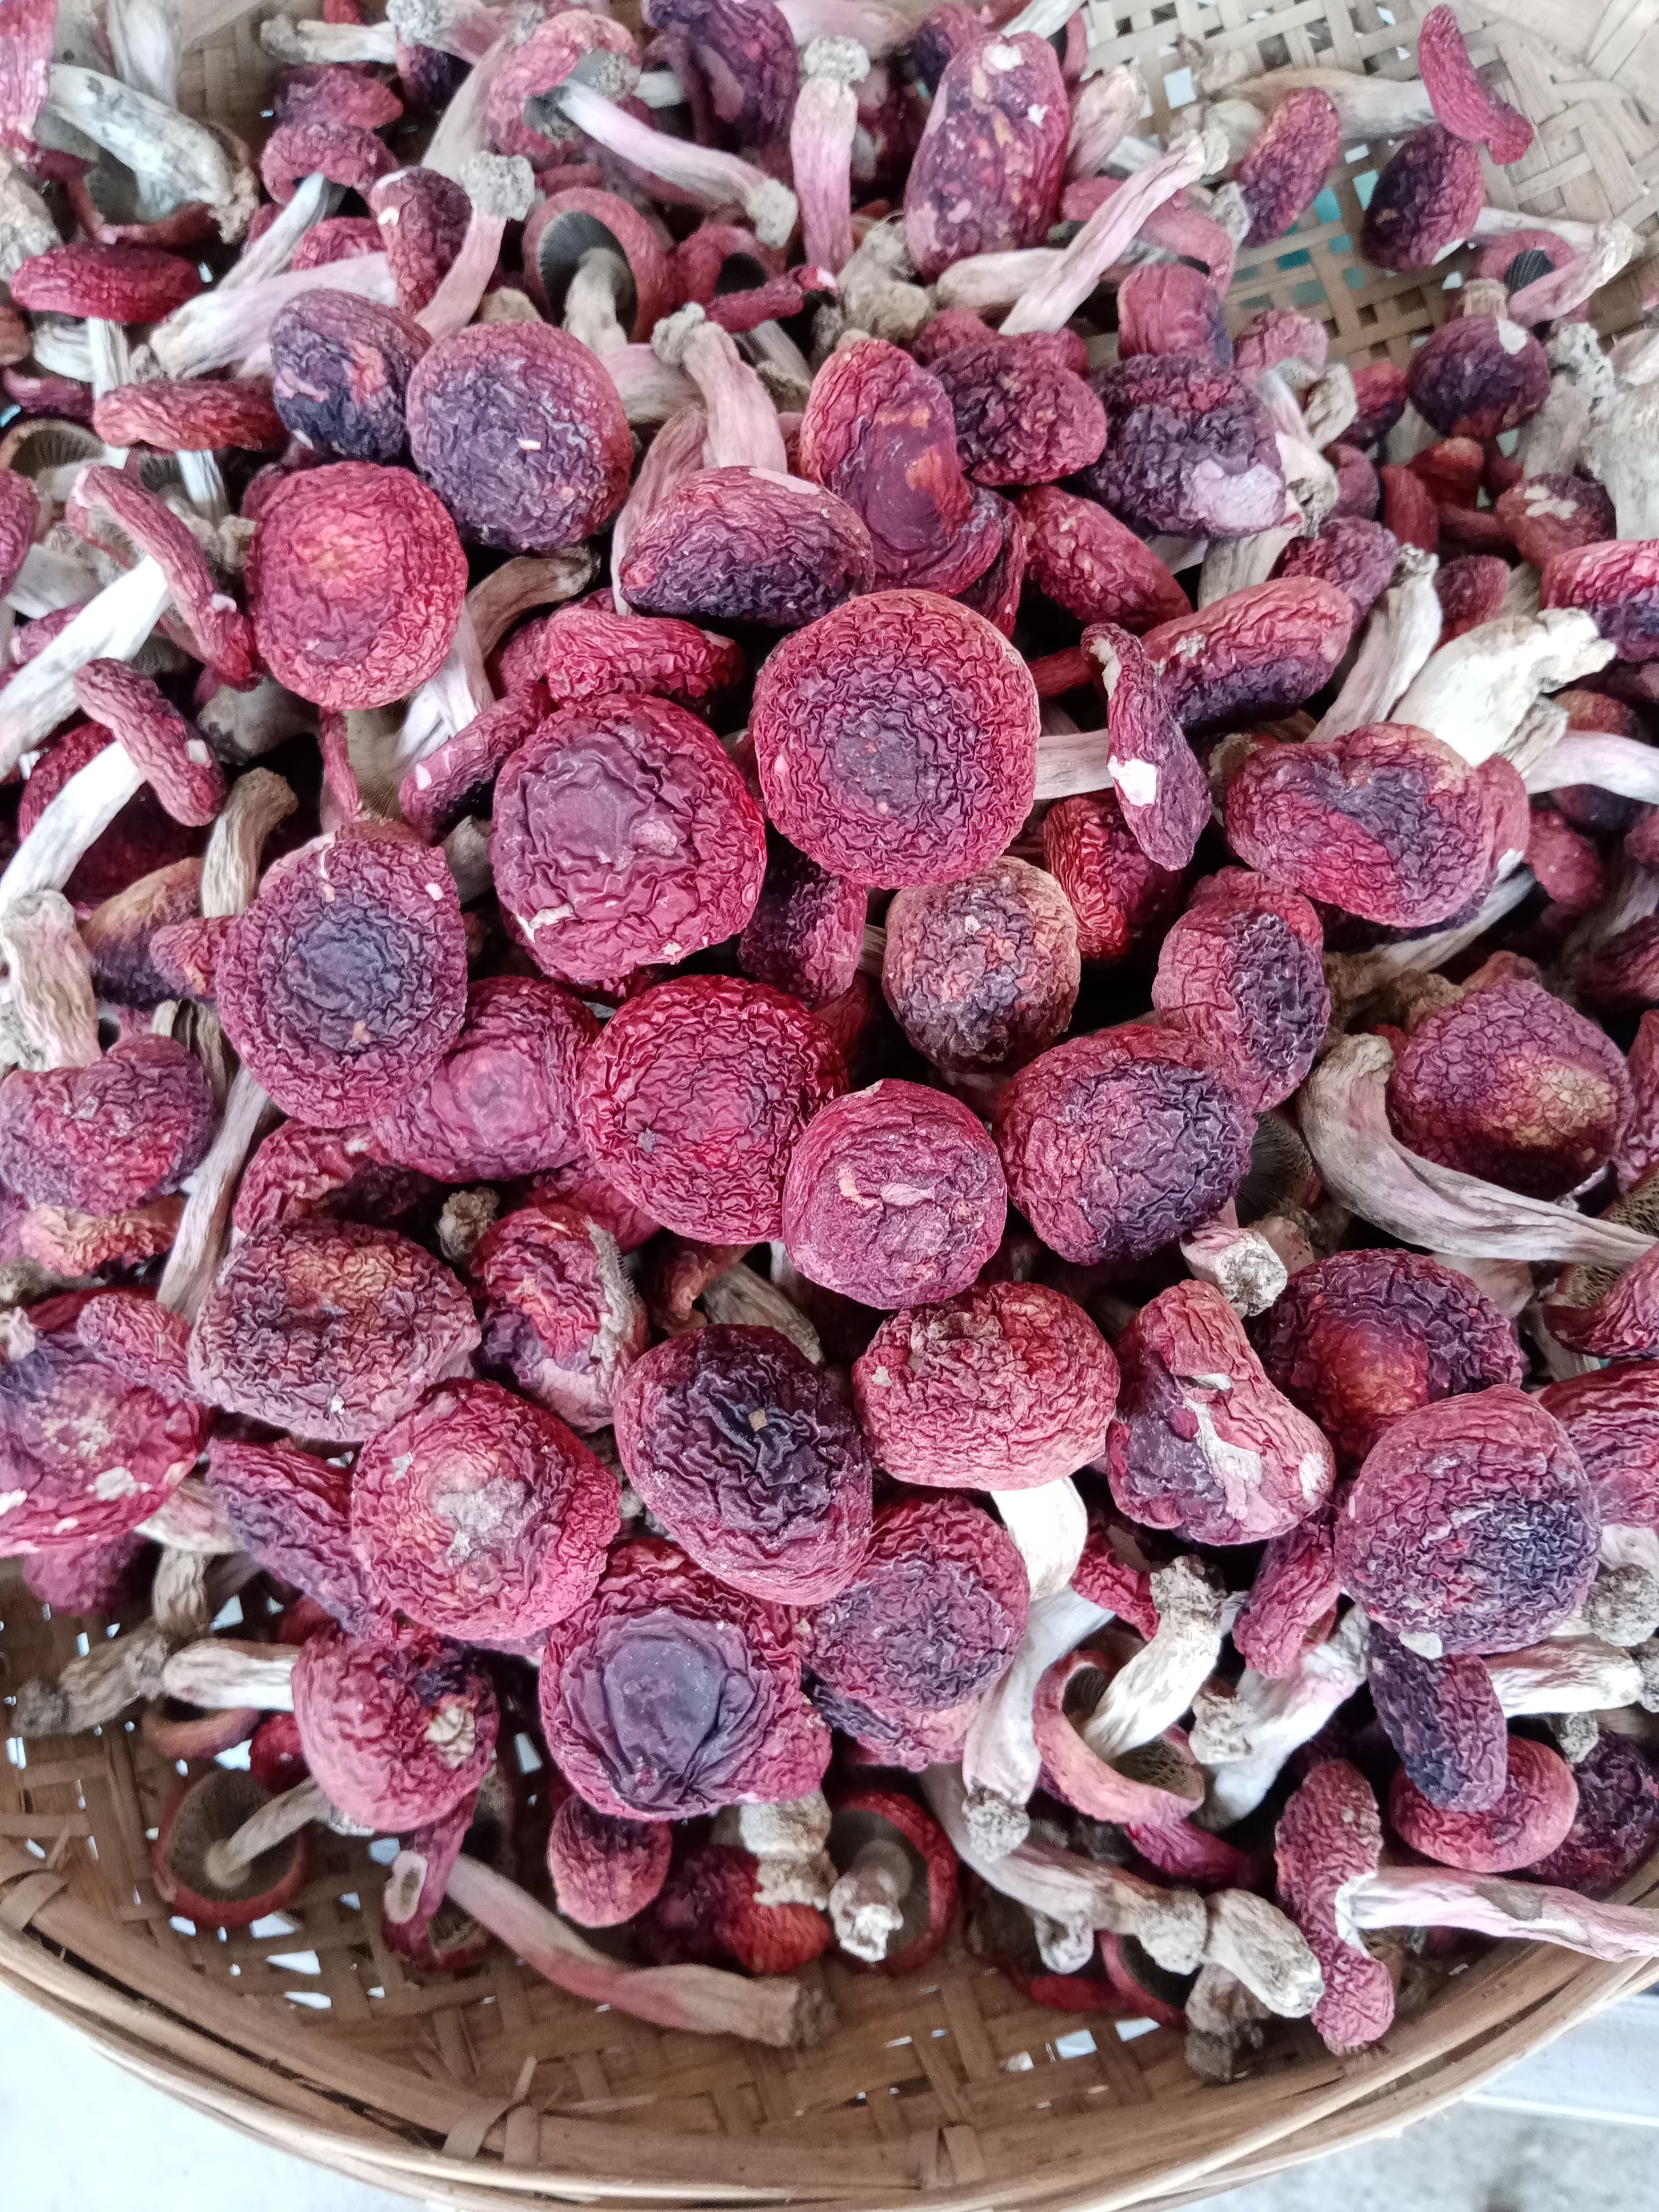 昌宁县云南红菇 高山红小标菇2到3.3公分左右 来自大自然的美味